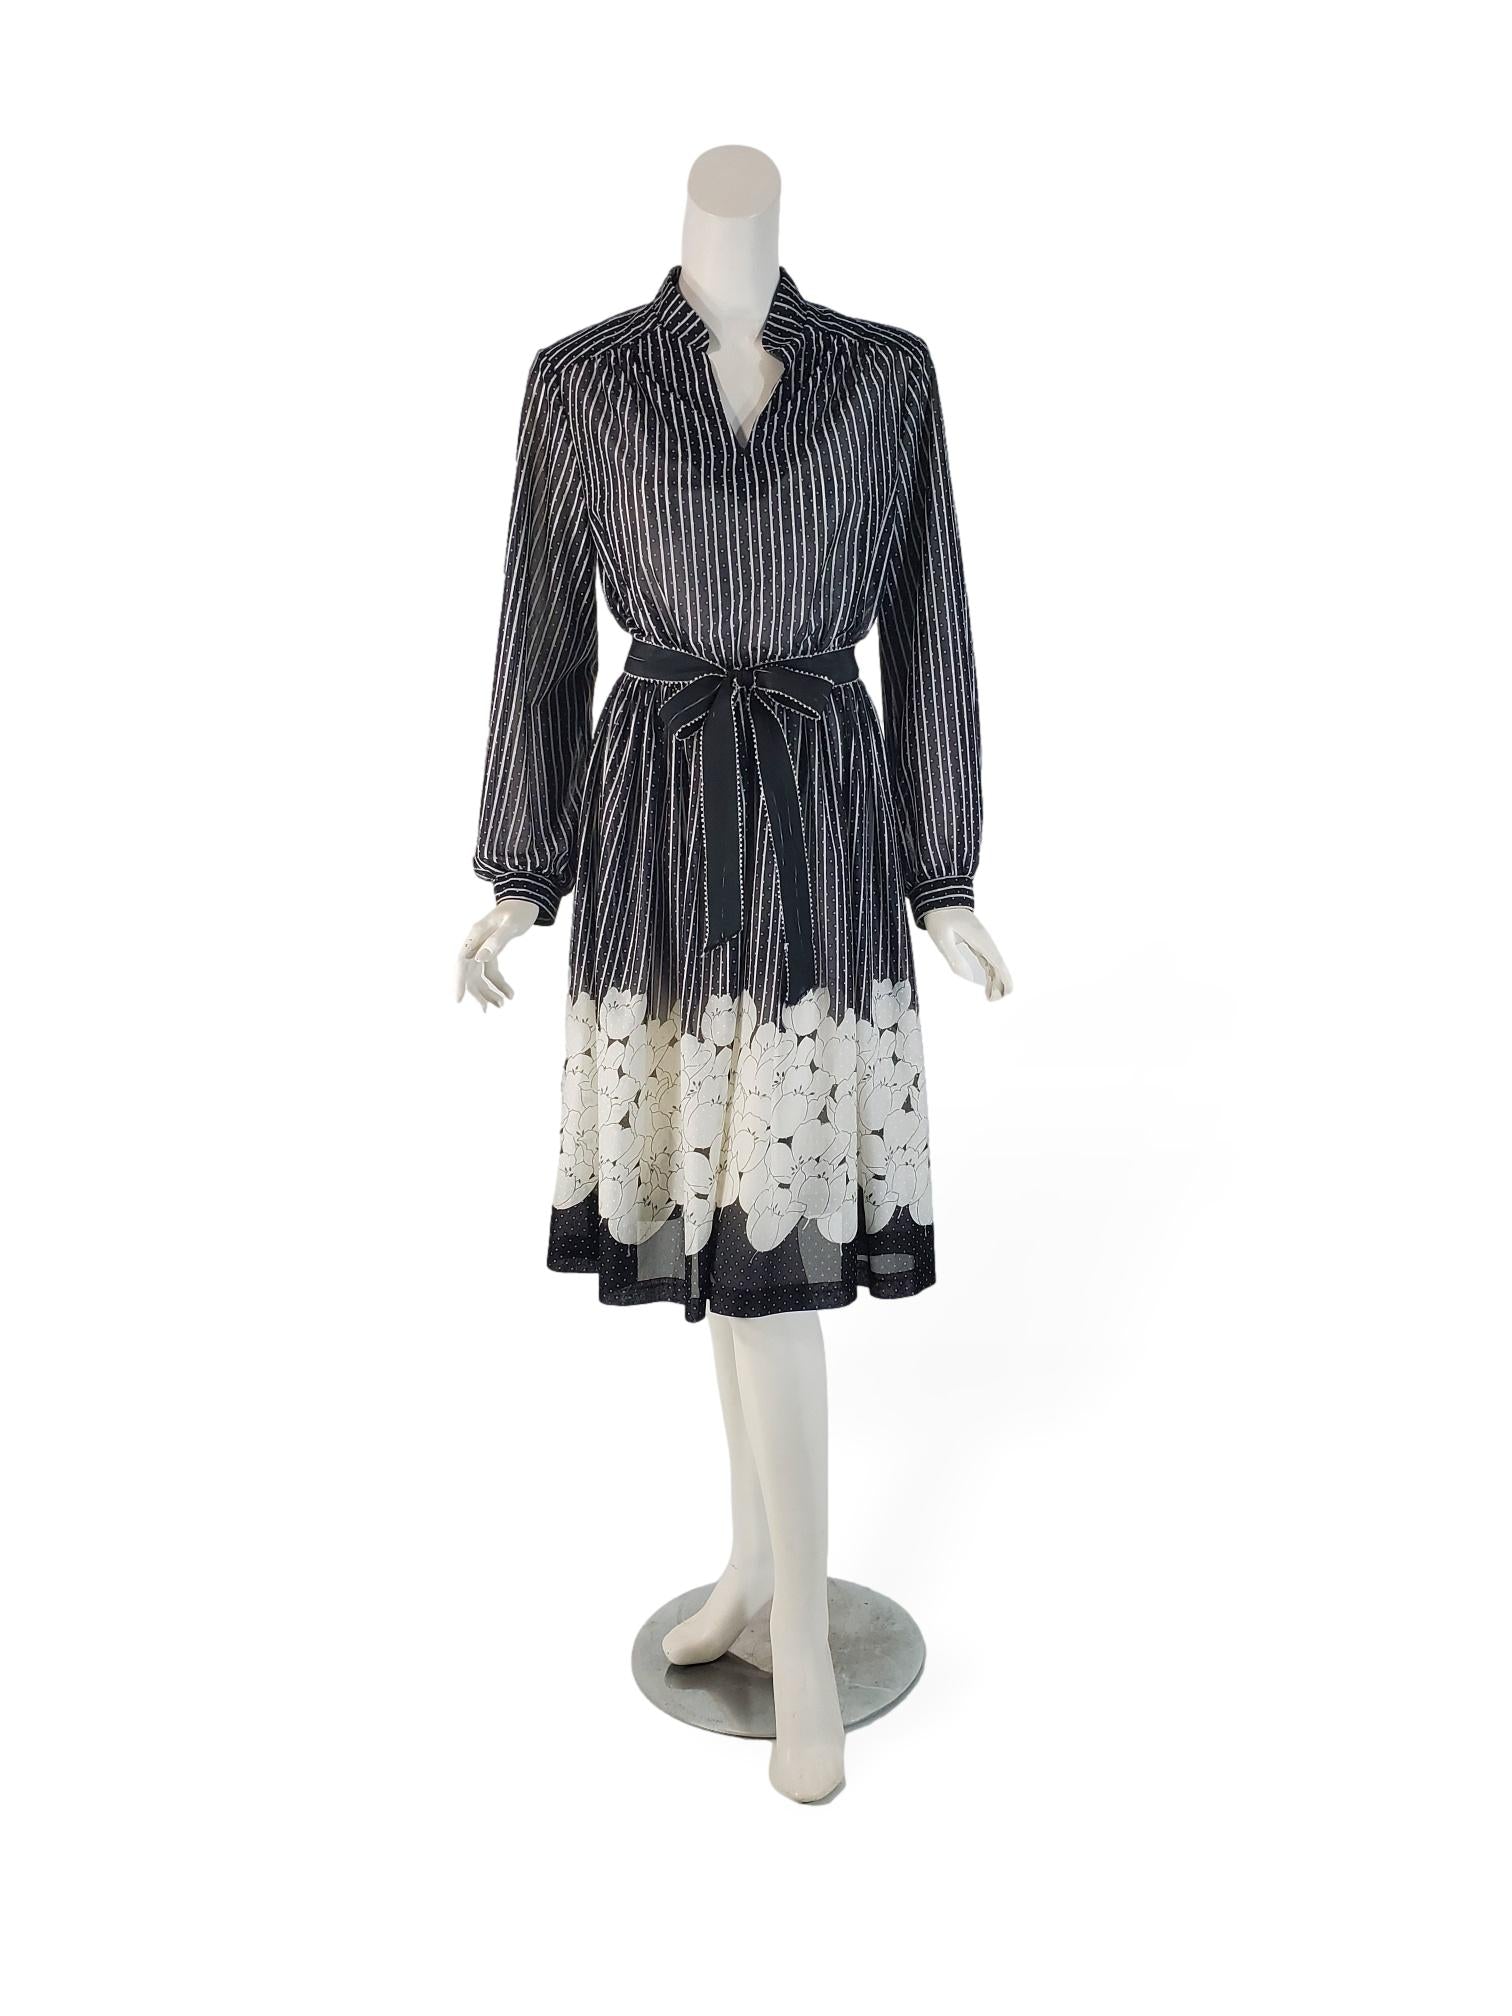 70s/80s Secretary Dress in Black and White – Better Dresses Vintage